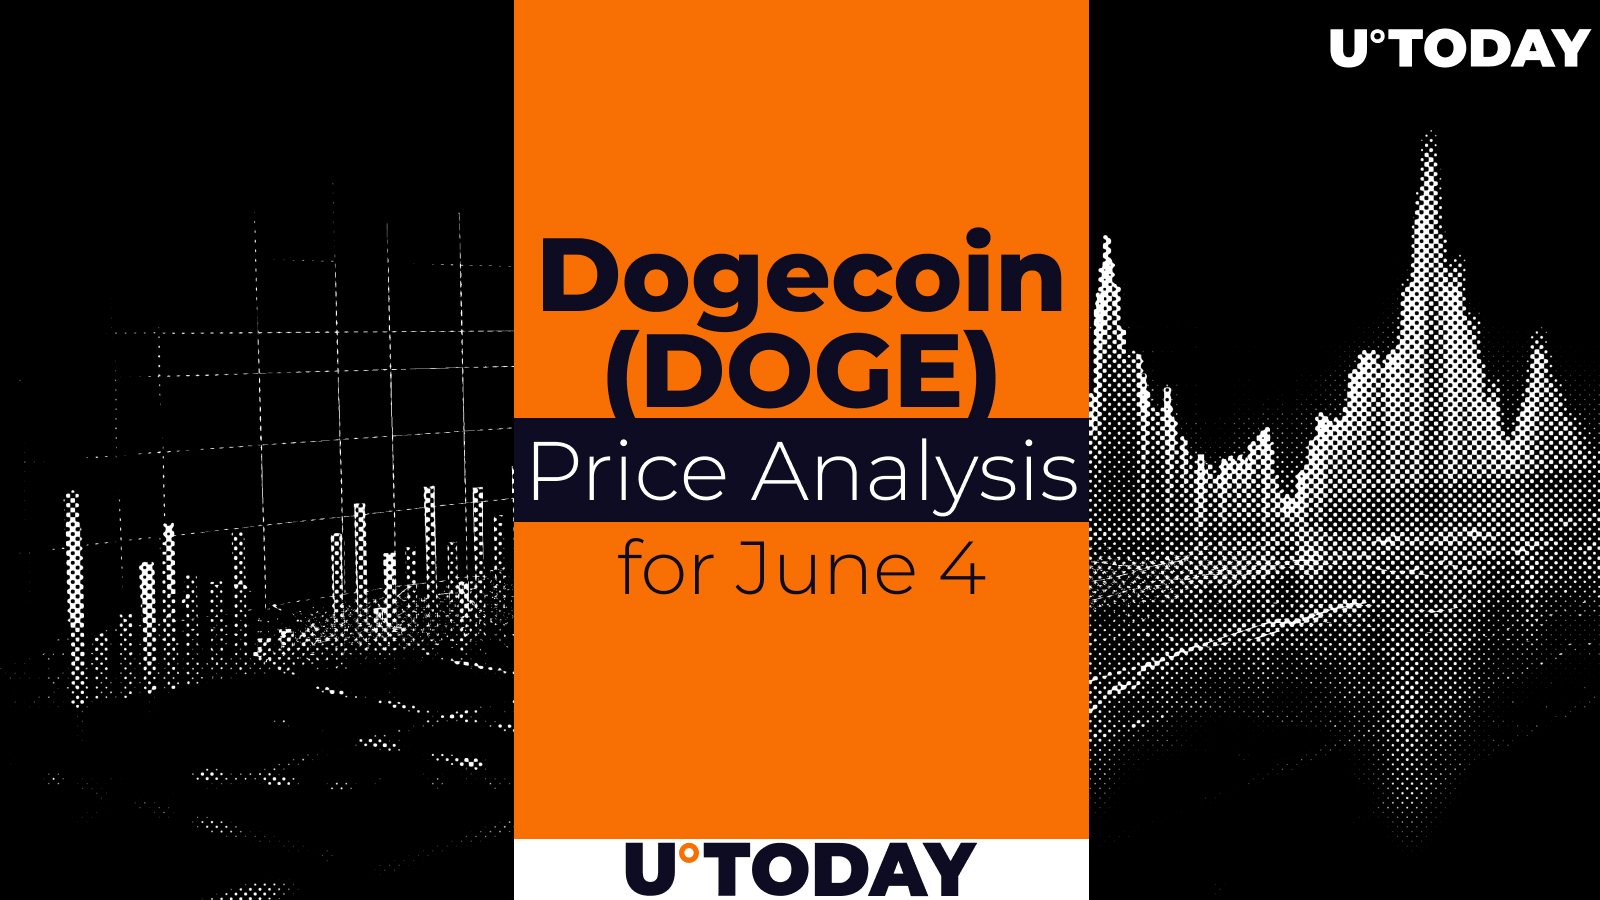 DOGE Price Prediction for June 4